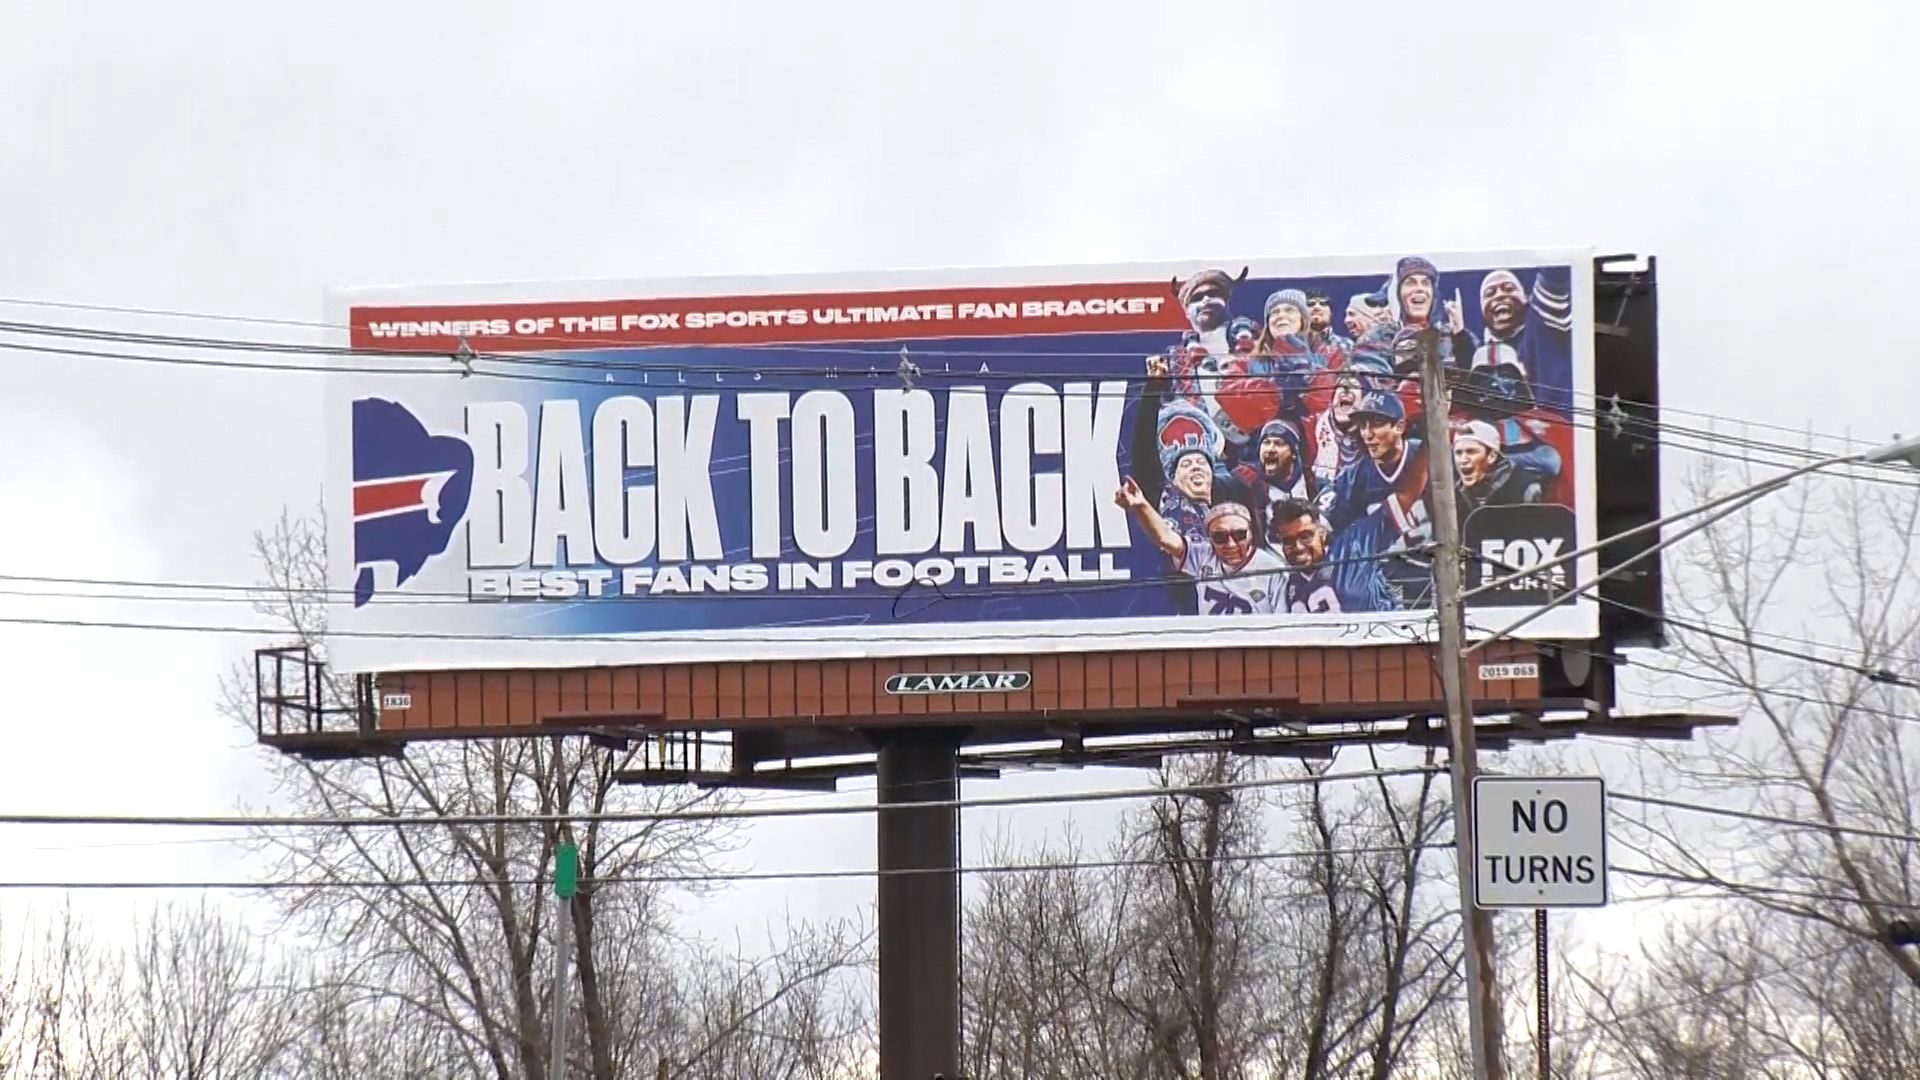 Buffalo 'best fans' billboard put up near Gillette ahead of